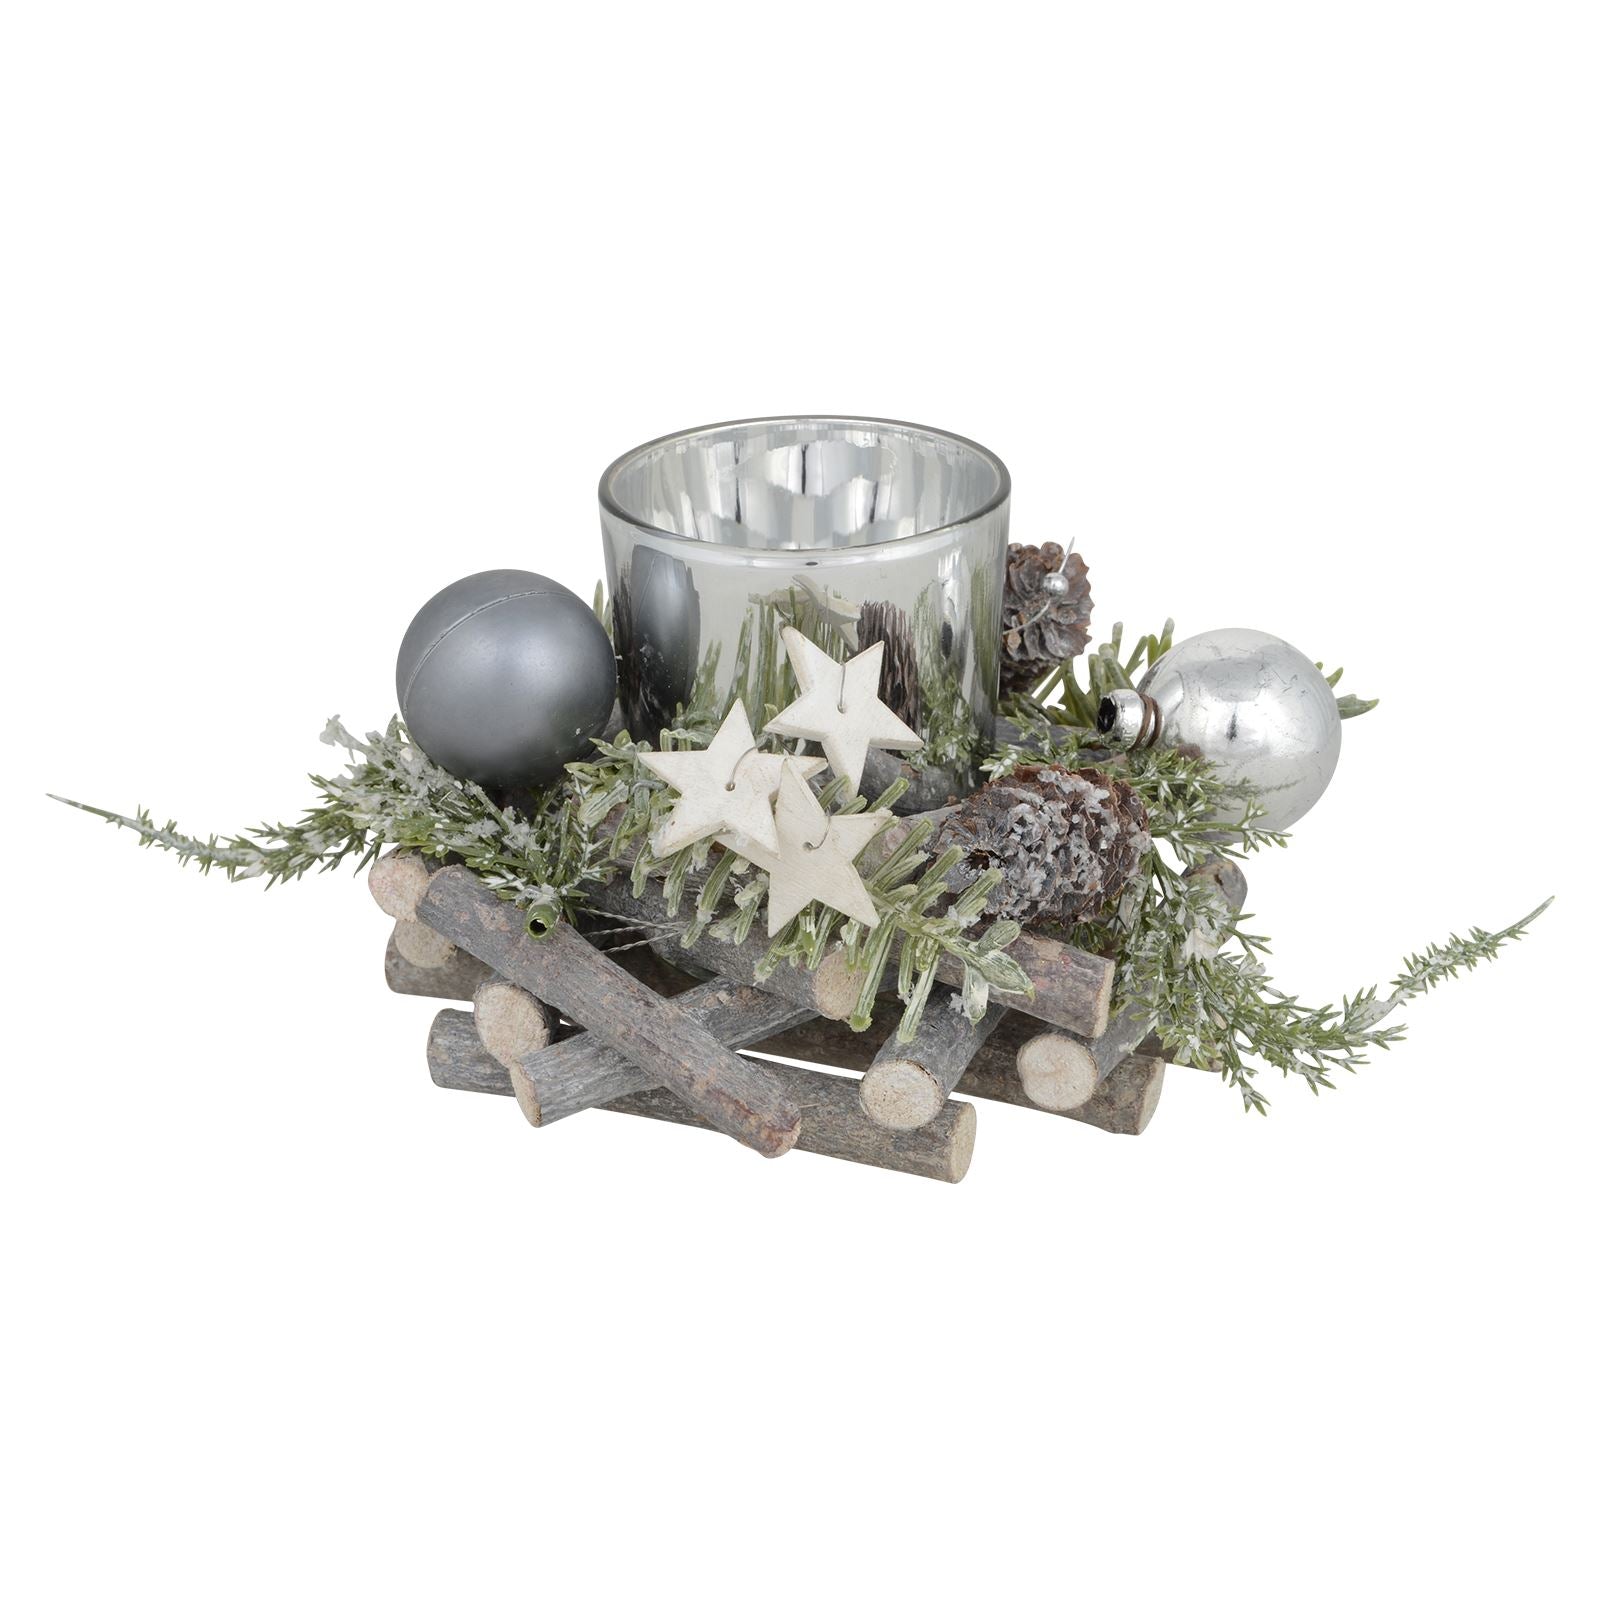 Mr Crimbo Rustic Christmas Tealight Candle Holder Grey Silver - MrCrimbo.co.uk -XS5765 - 12cm -candle holder